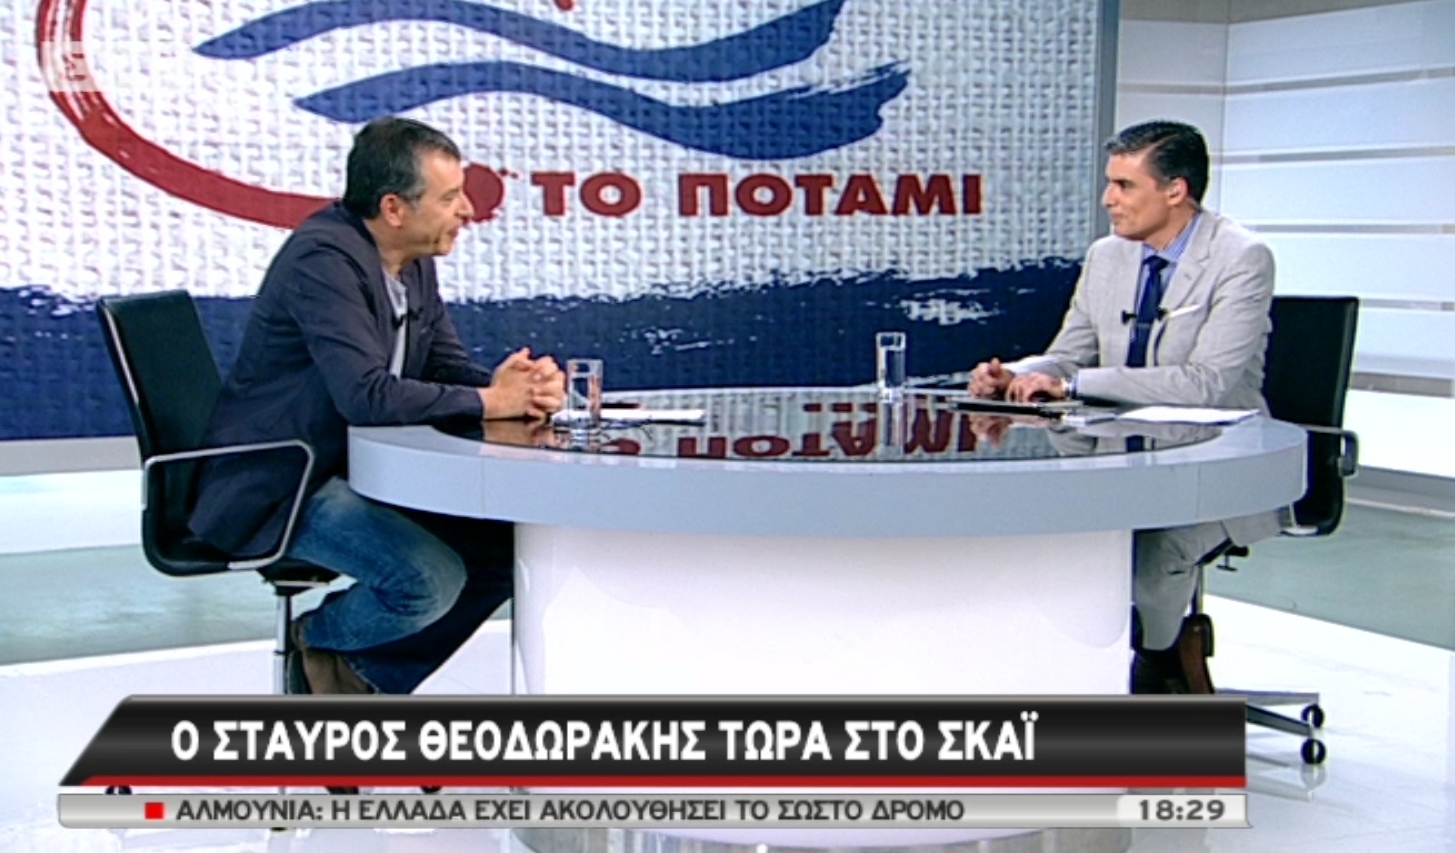 Ο Σταύρος Θεοδωράκης στον ΣΚΑΙ: Στόχος το Ποτάμι να είναι τρίτη δύναμη στις ευρωεκλογές κοντά στους δύο και όχι “τσόντα”